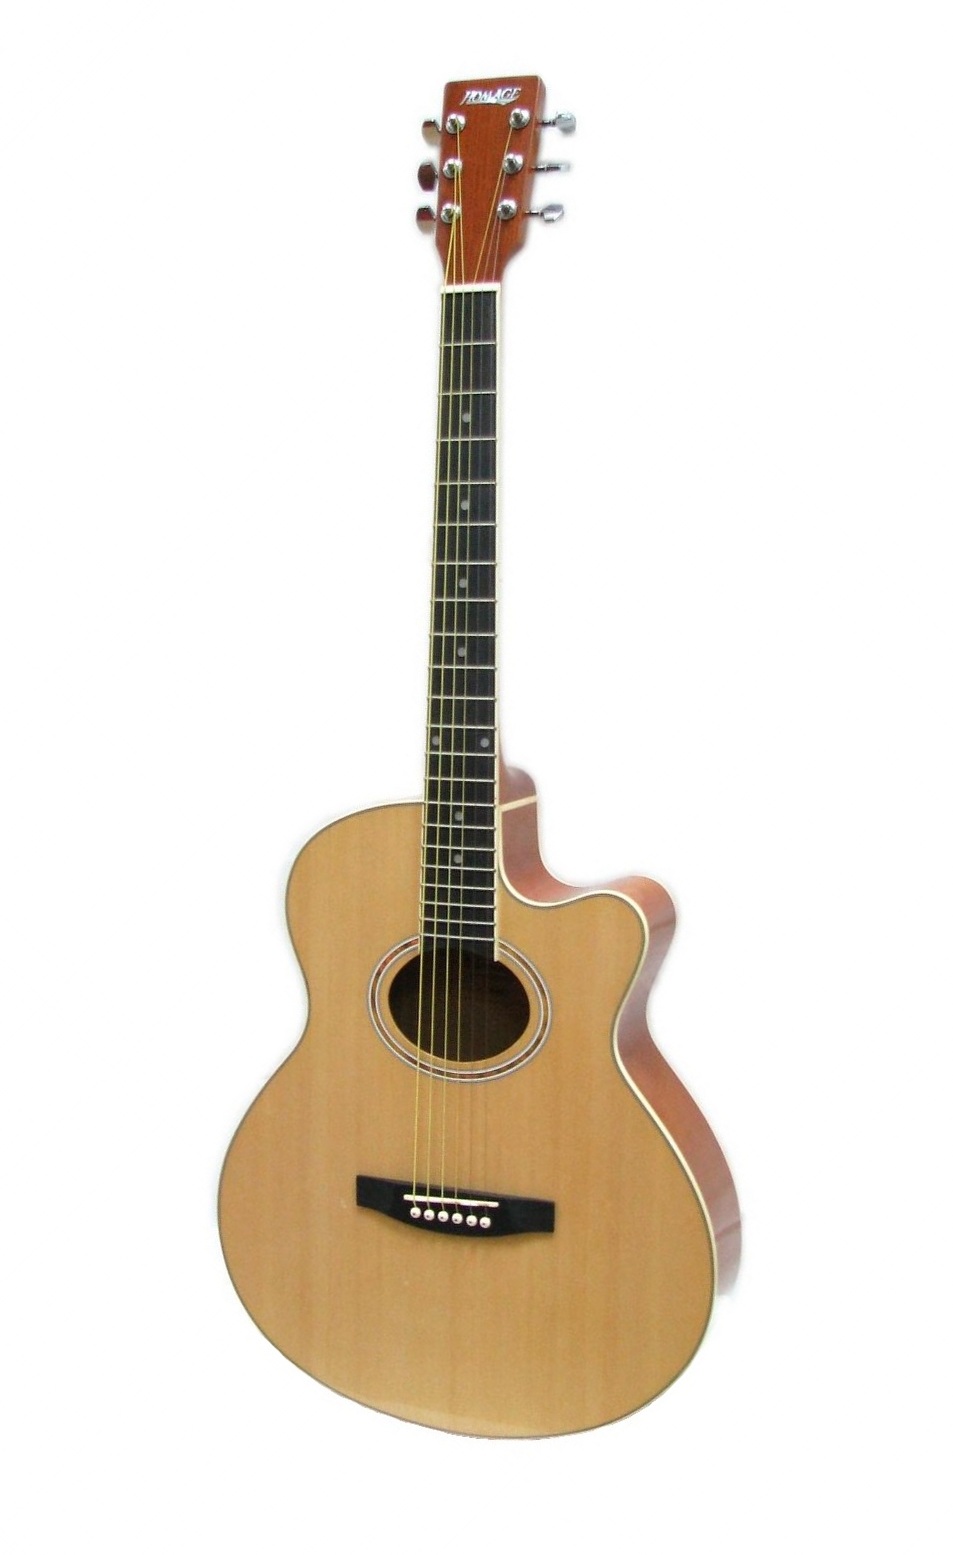 Акустические гитары Homage LF-401C-N гантельный гриф sportelite